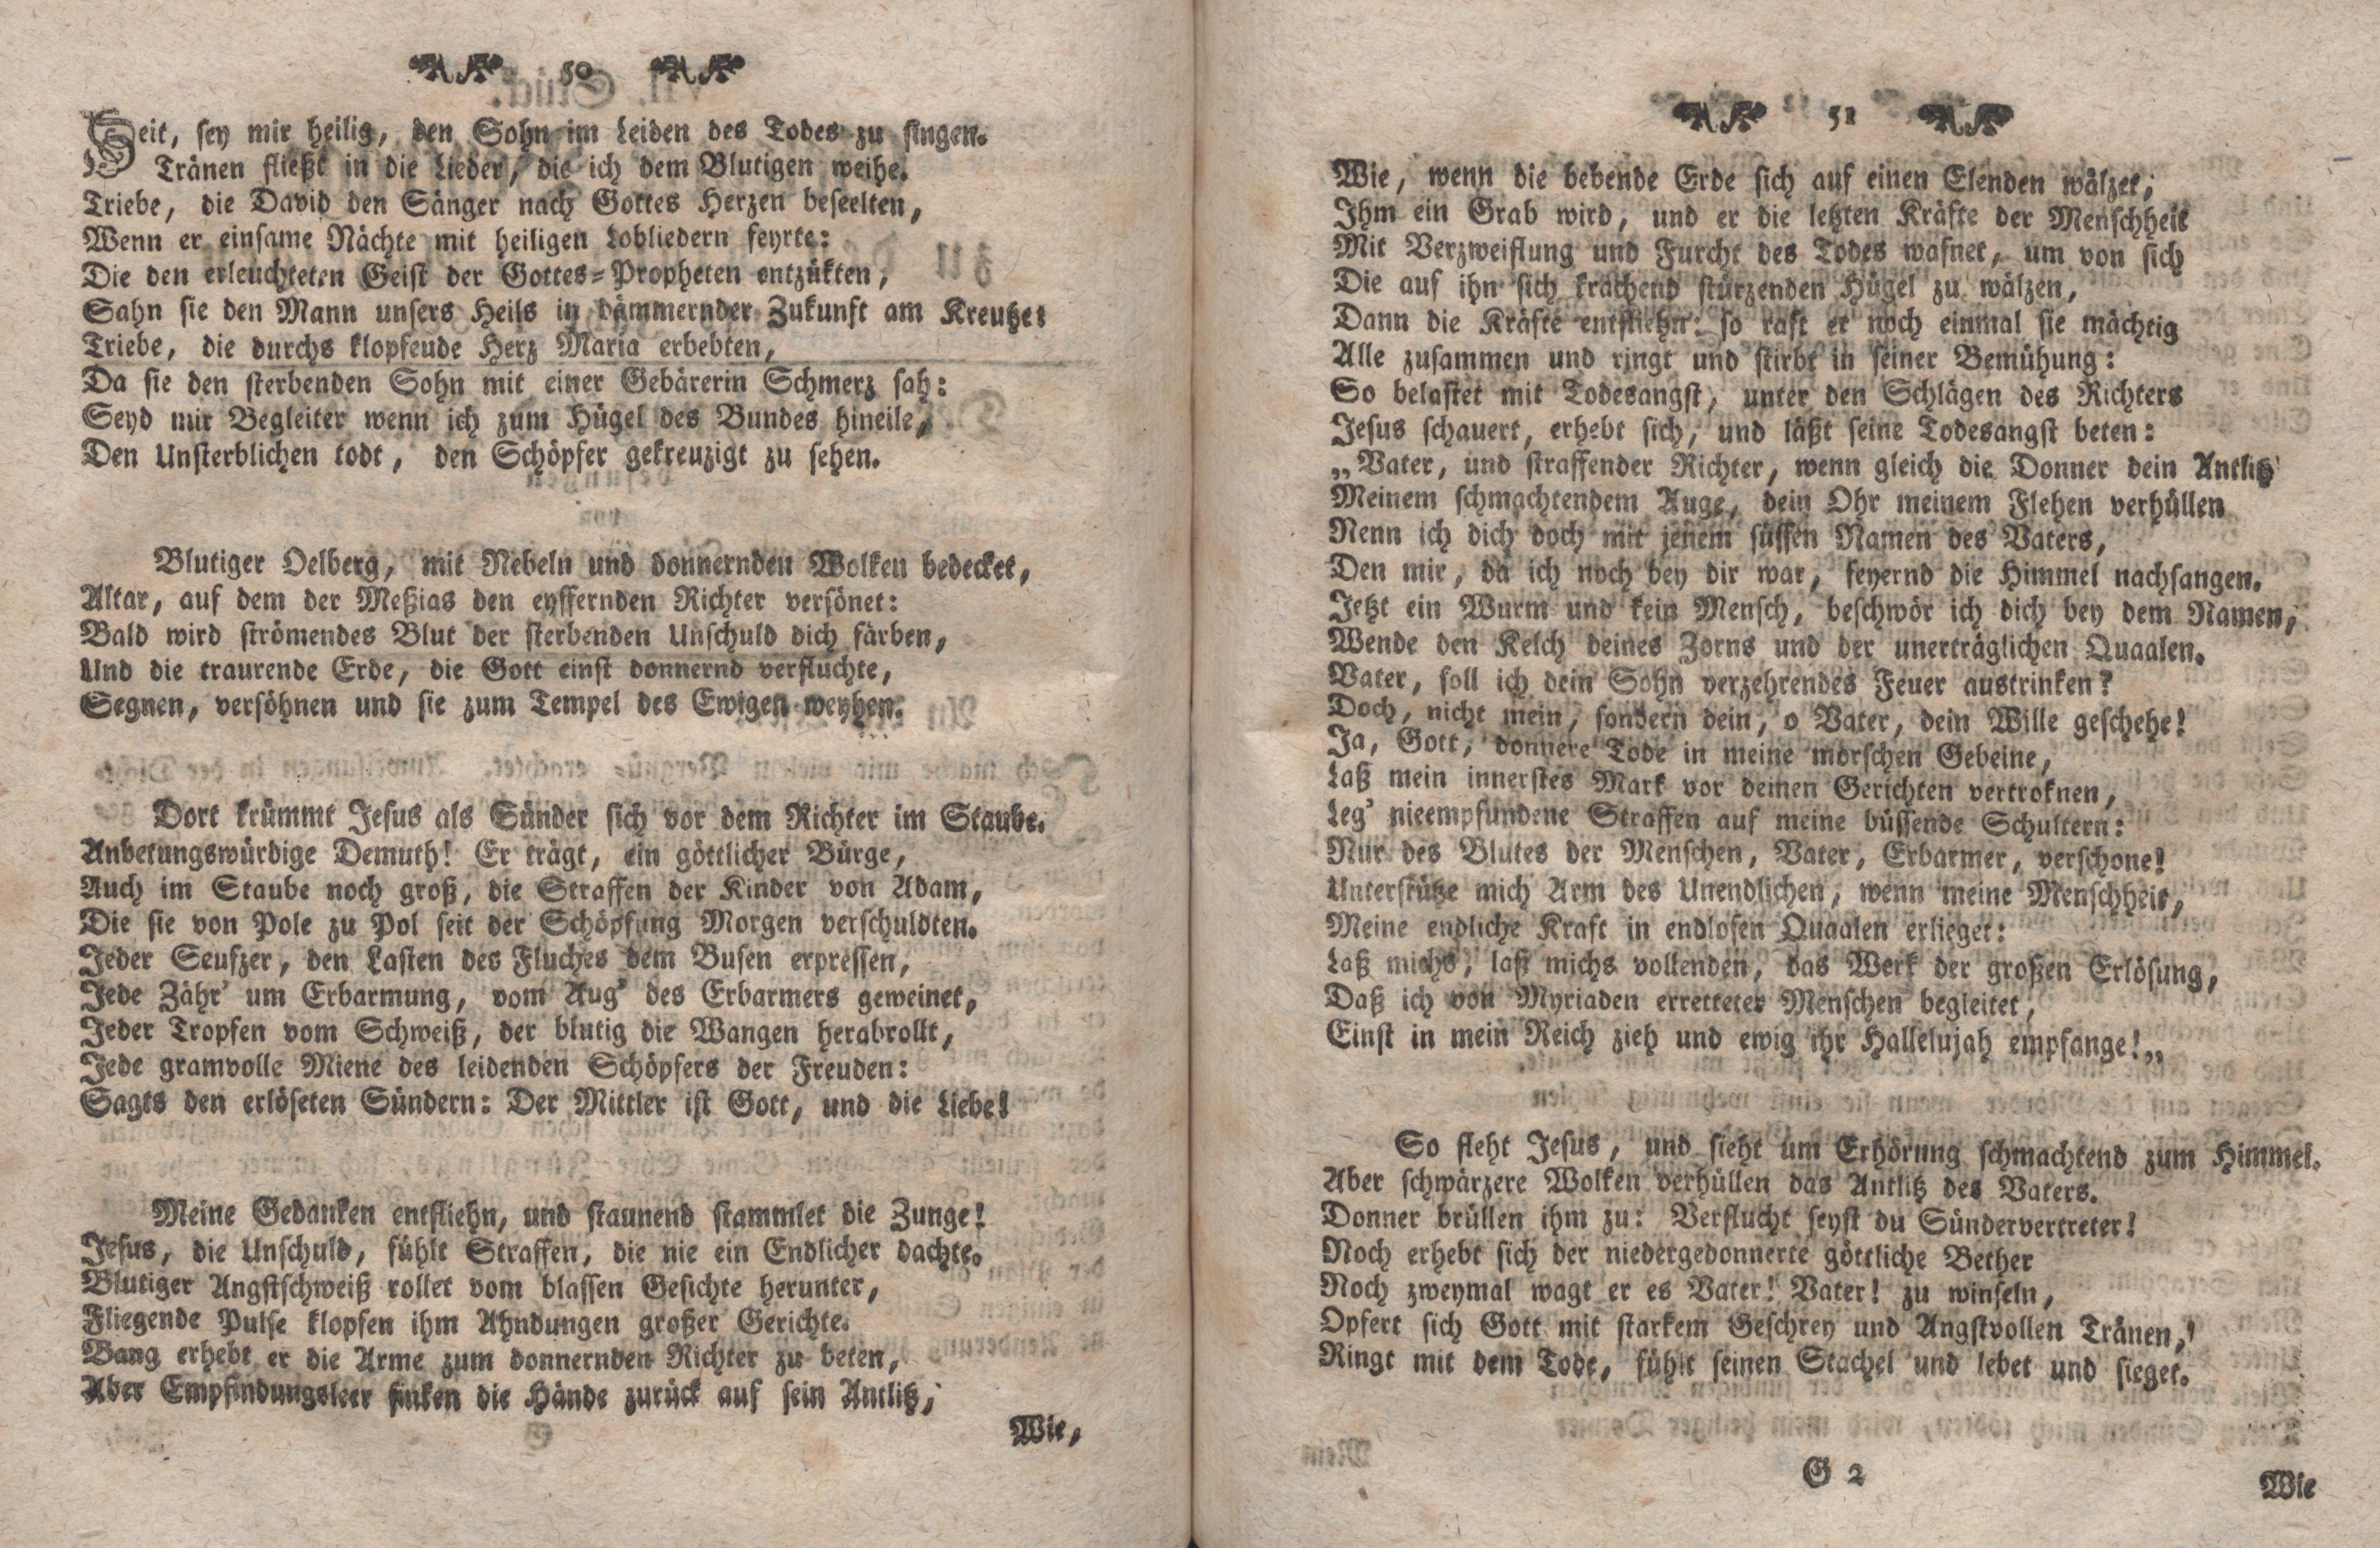 Gelehrte Beyträge zu den Rigischen Anzeigen 1766 (1766) | 26. (50-51) Main body of text